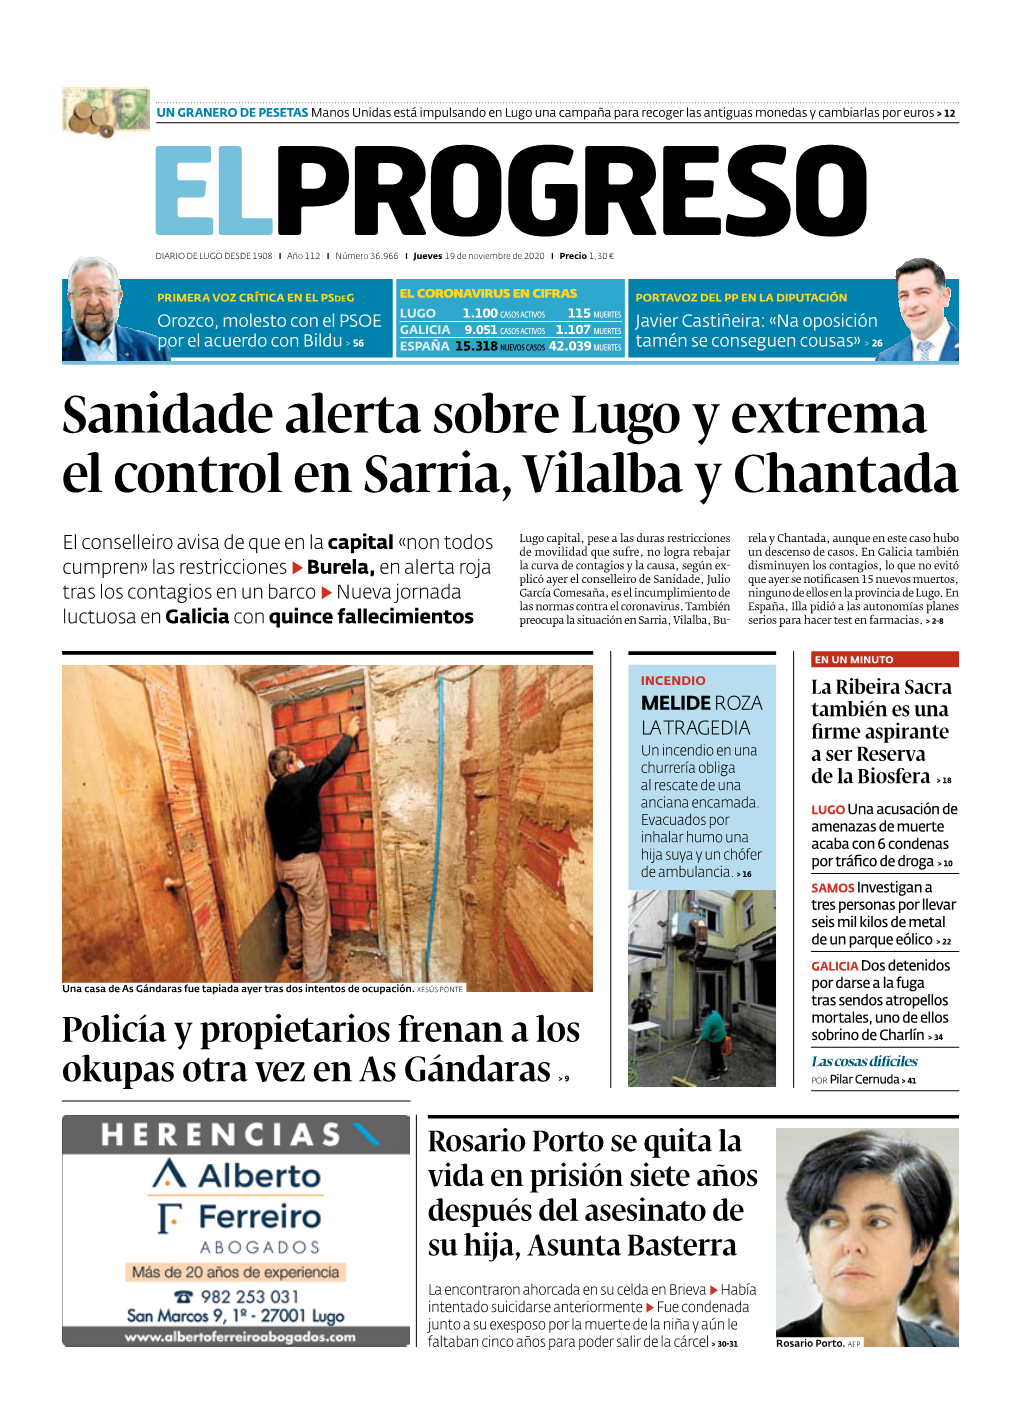 Sanidade Alerta Sobre Lugo Y Extrema El Control En Sarria, Vilalba Y Chantada